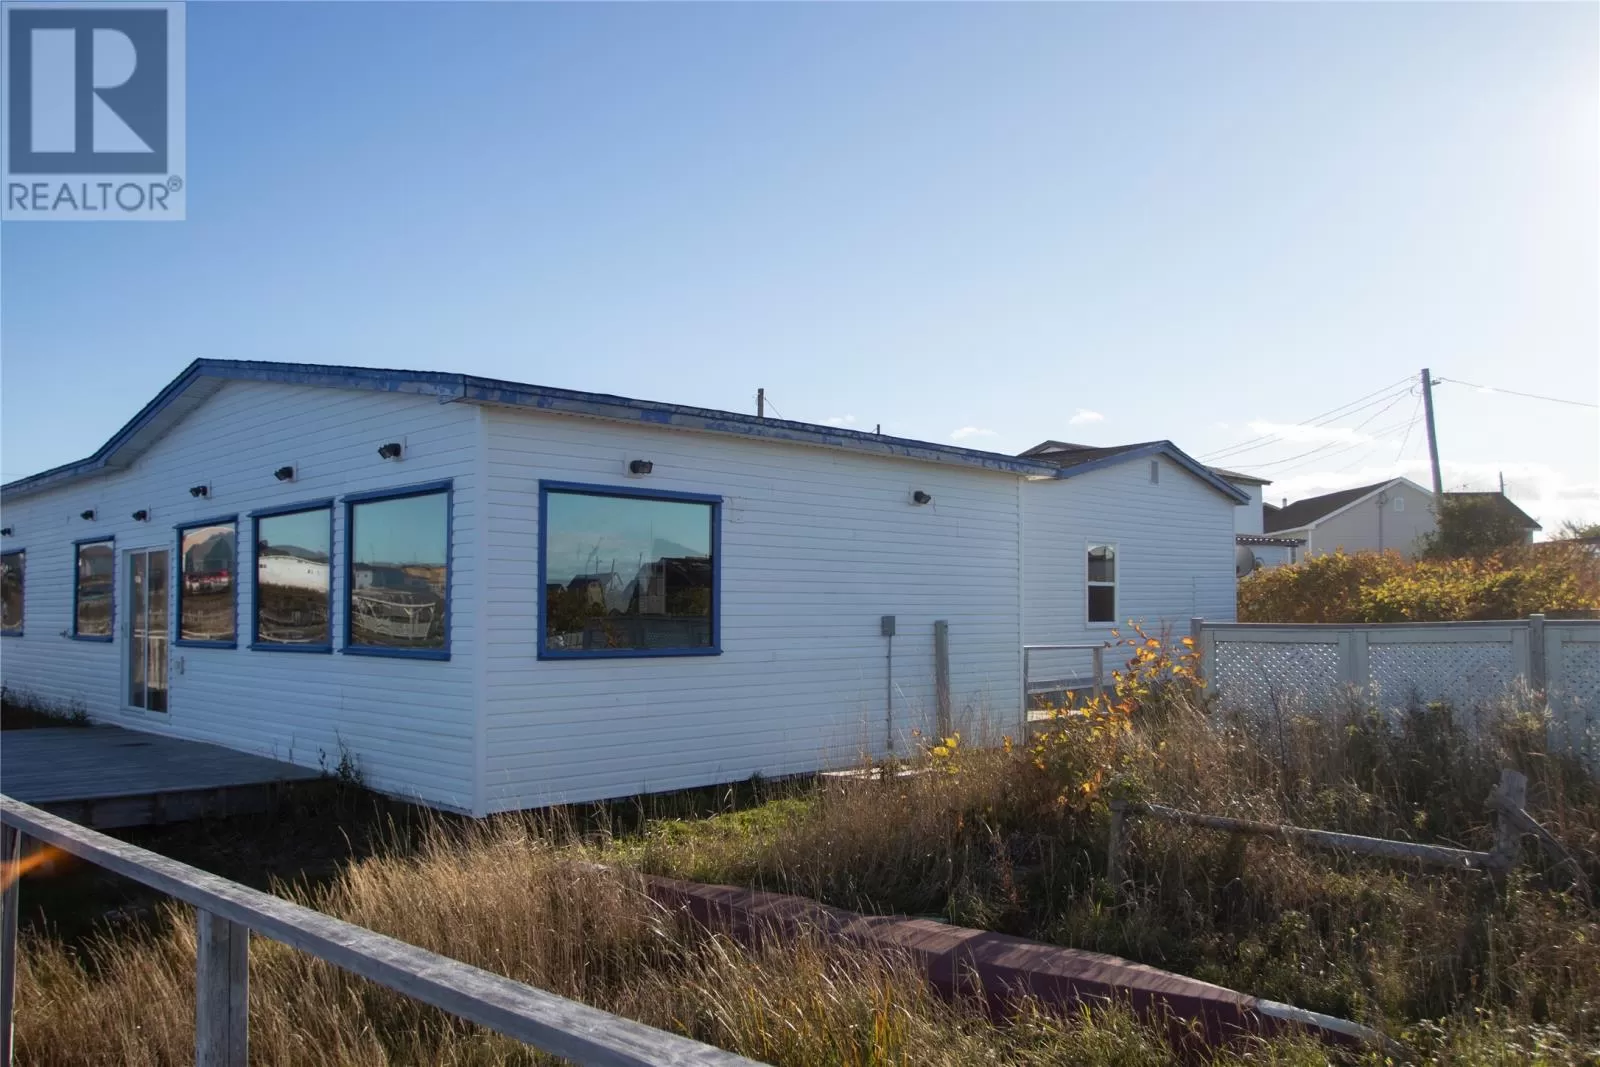 House for rent: 16 Powell's Lane, Bonavista, Newfoundland & Labrador A0C 1B0